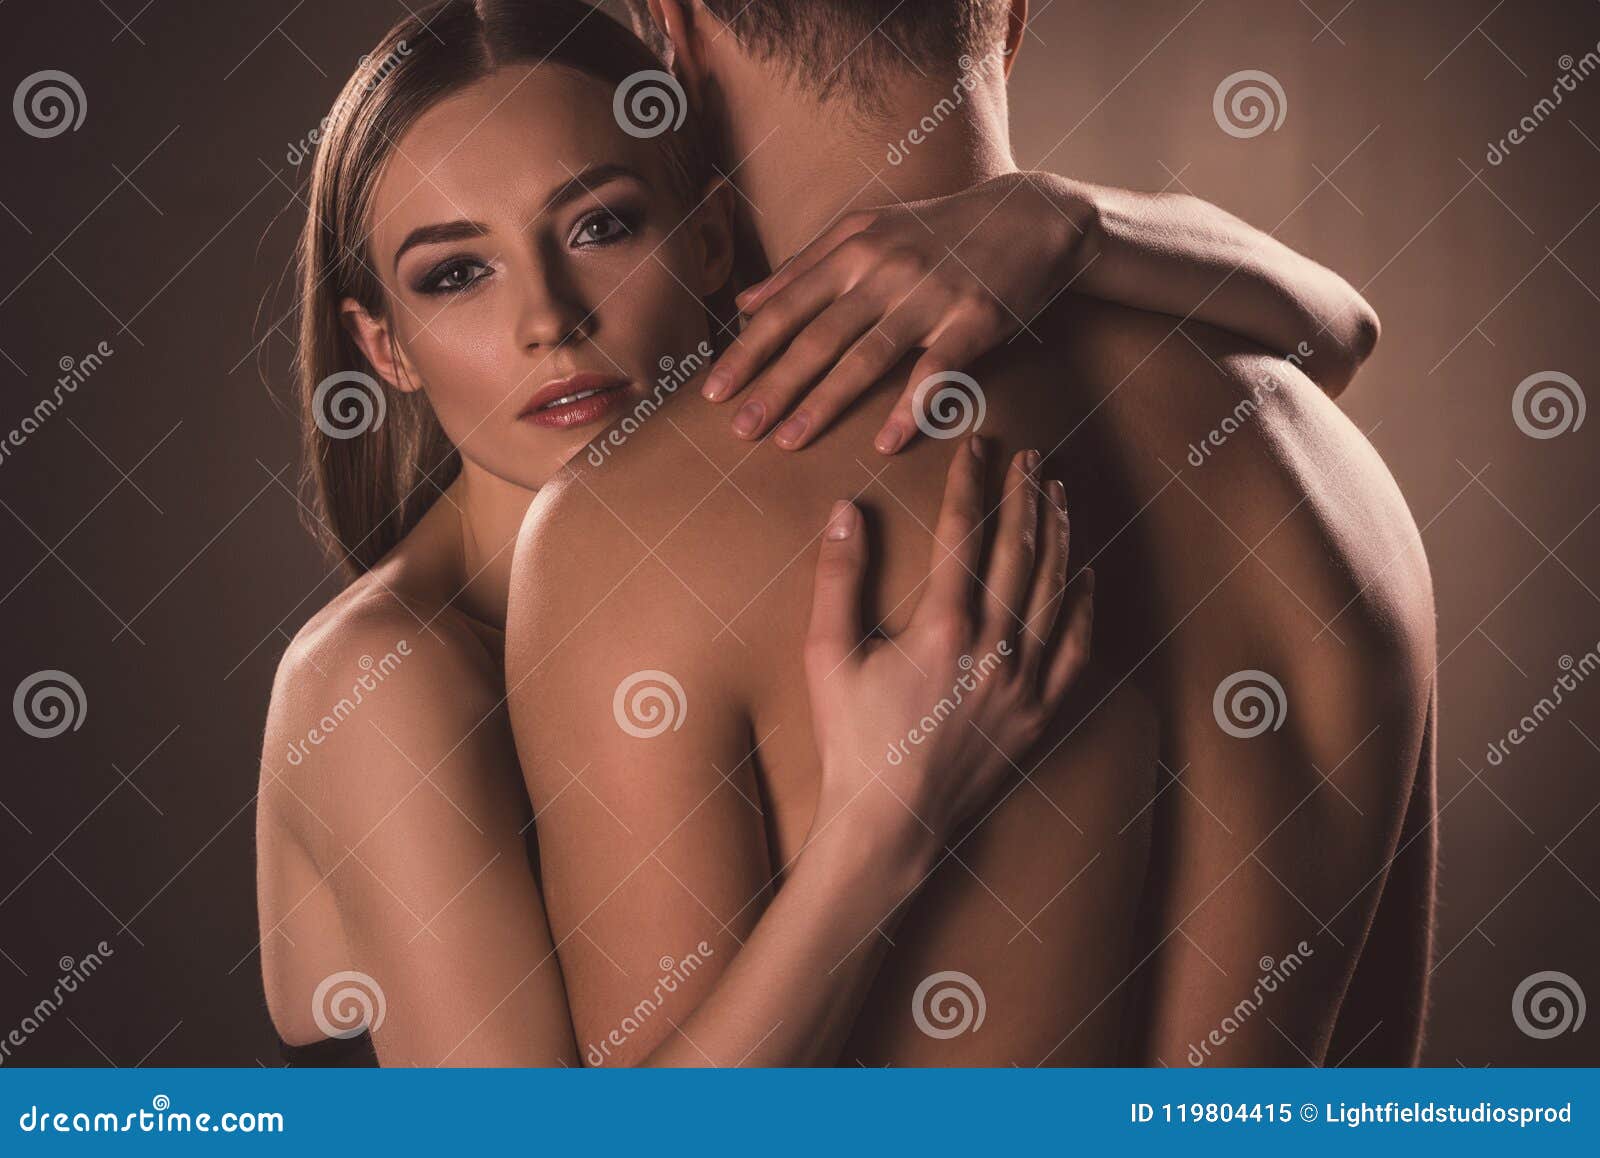 sensual nude lovers hugging,